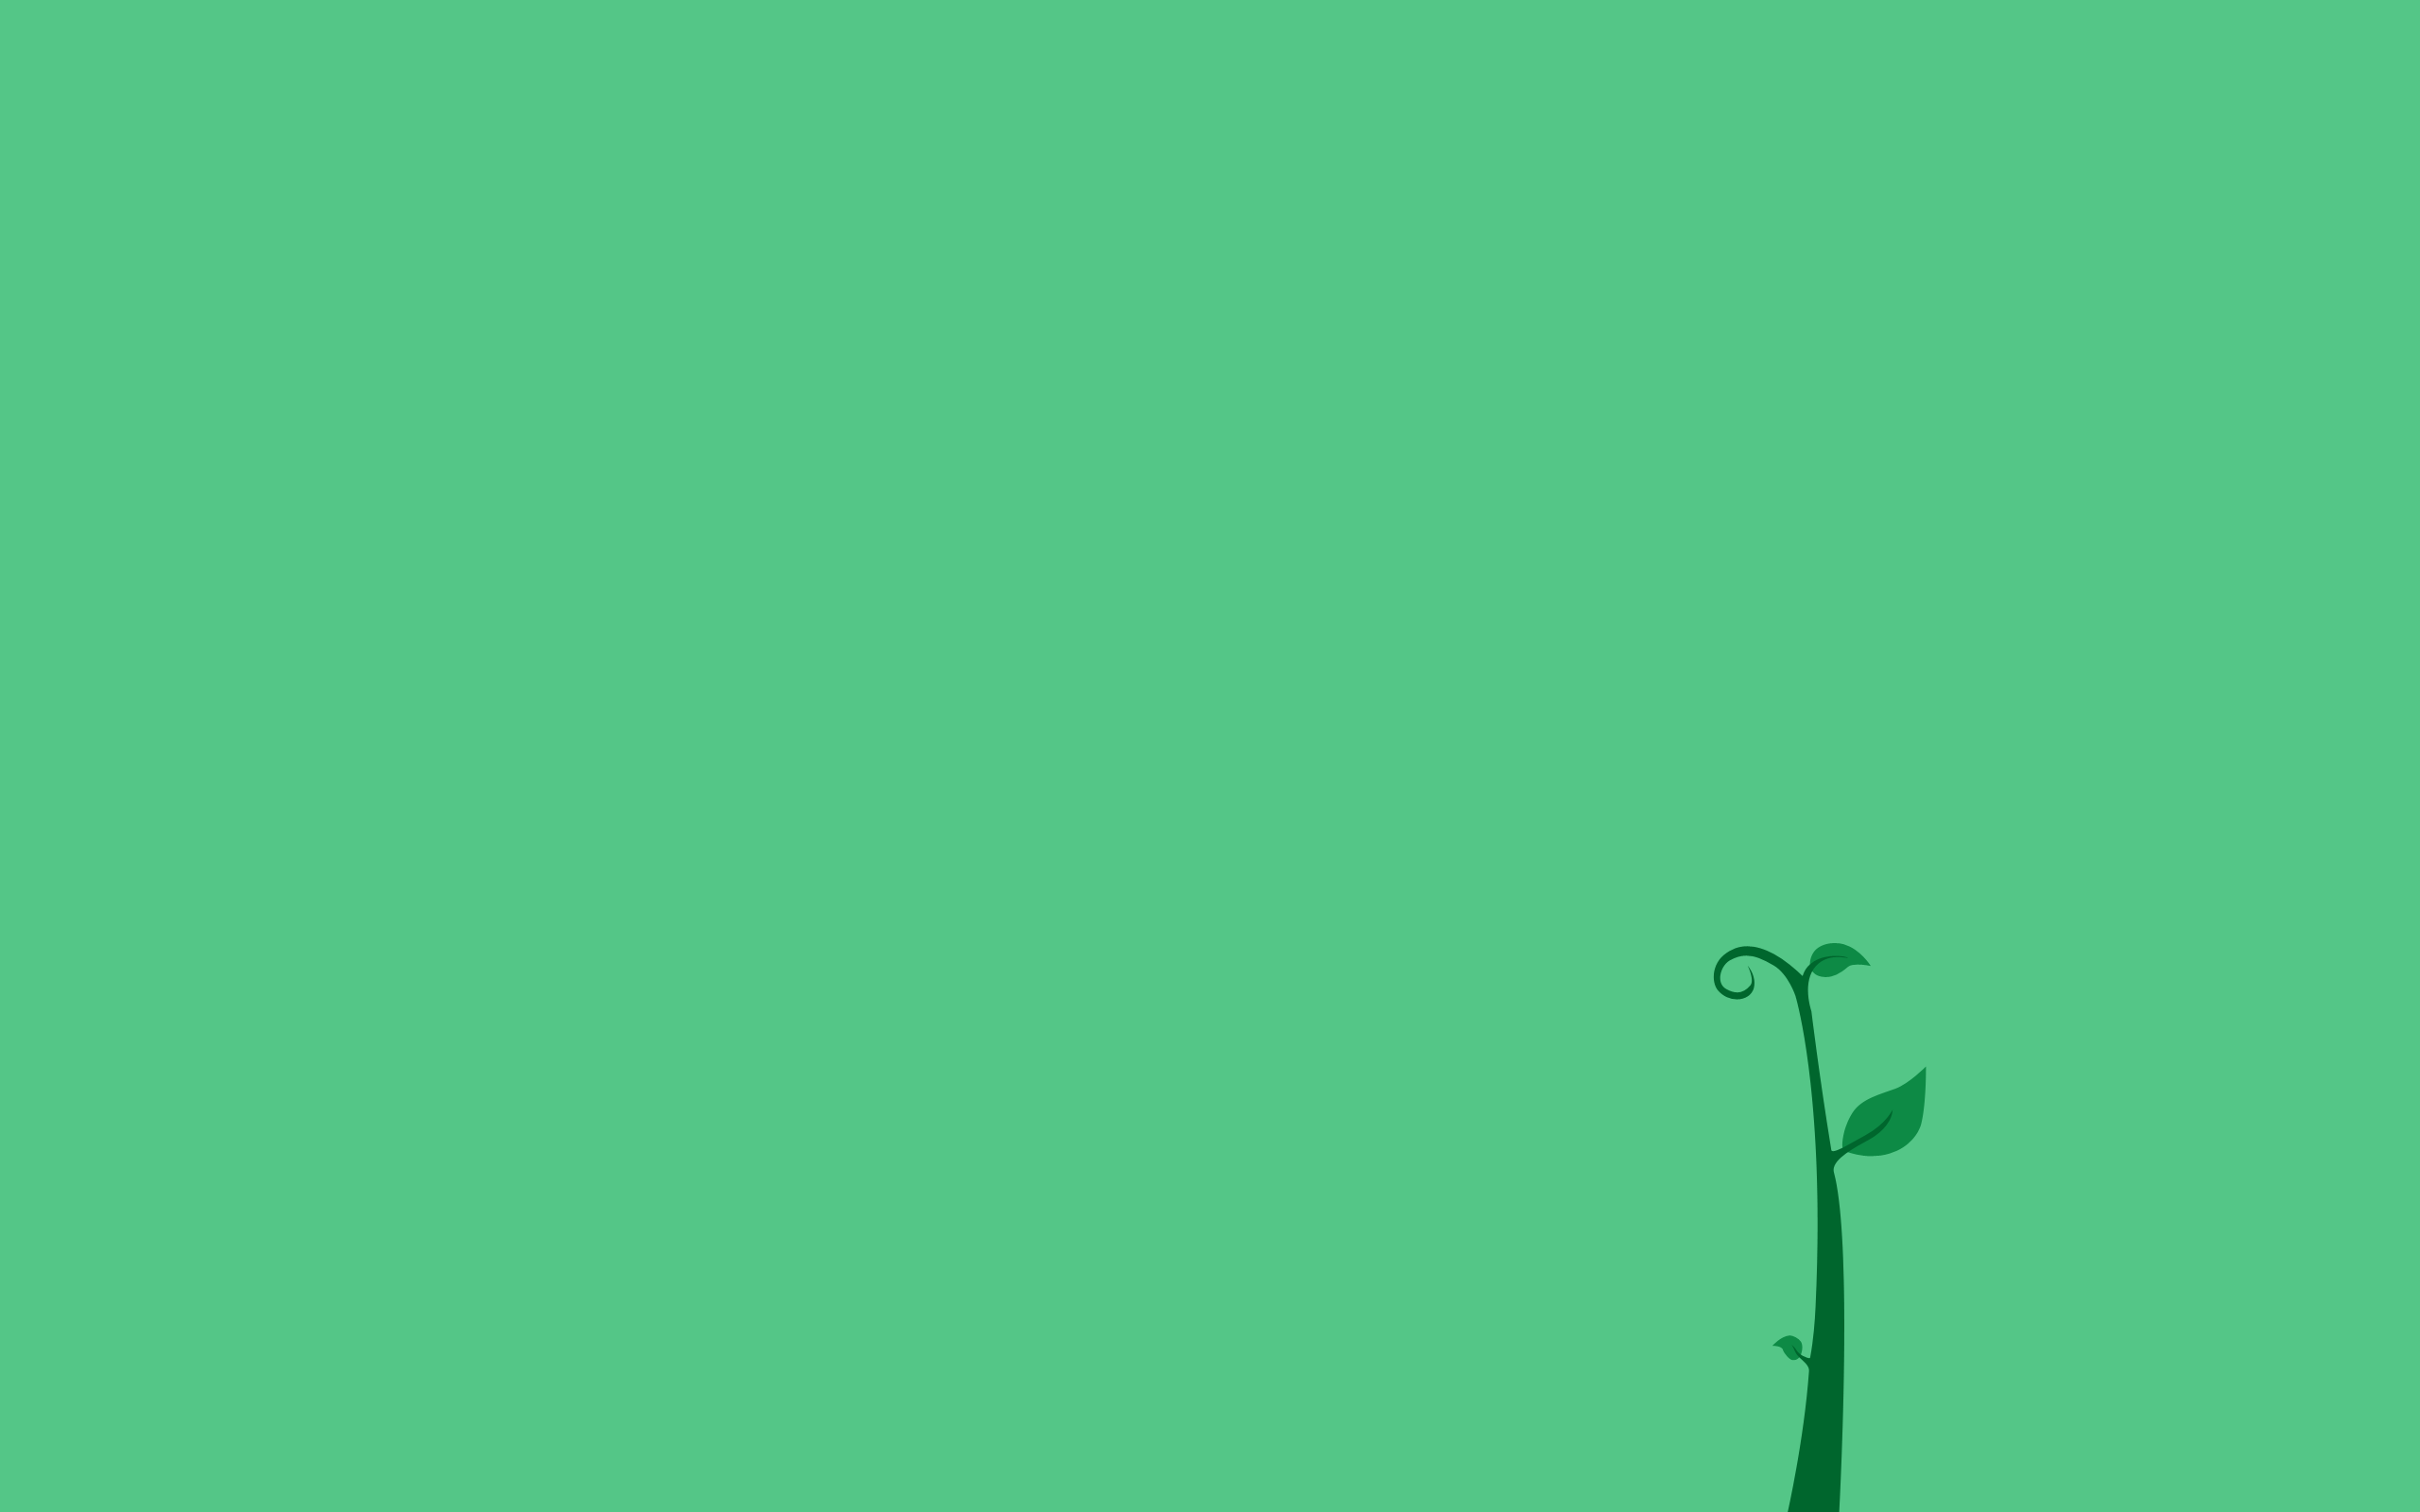 Hình nền xanh lá cây đơn giản là một sự lựa chọn tuyệt vời để trang trí cho màn hình của bạn. Khi bạn xem nó, bạn sẽ cảm nhận được sự bình yên, tươi mới và thanh nhã của nó. Nó cũng làm cho mắt của bạn thư giãn và ít mỏi hơn khi sử dụng màn hình trong thời gian dài.